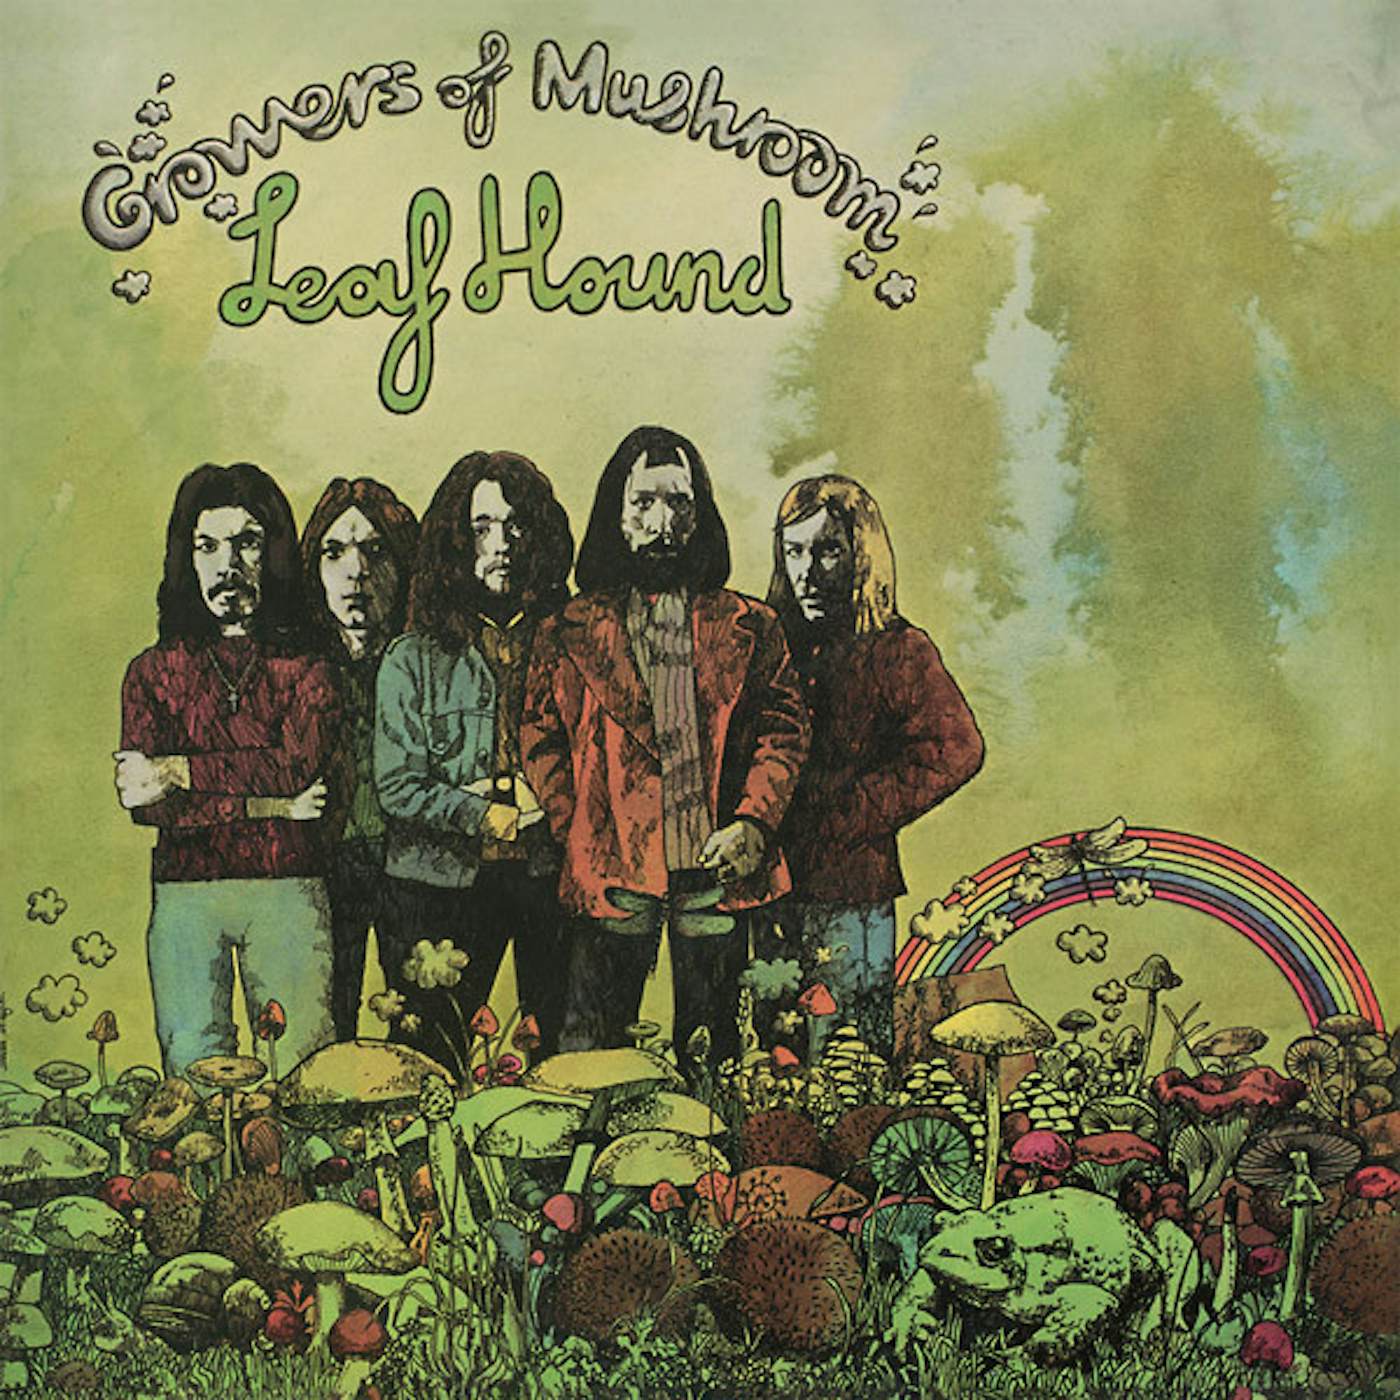 Leaf Hound Growers Of Mushroom Vinyl Record